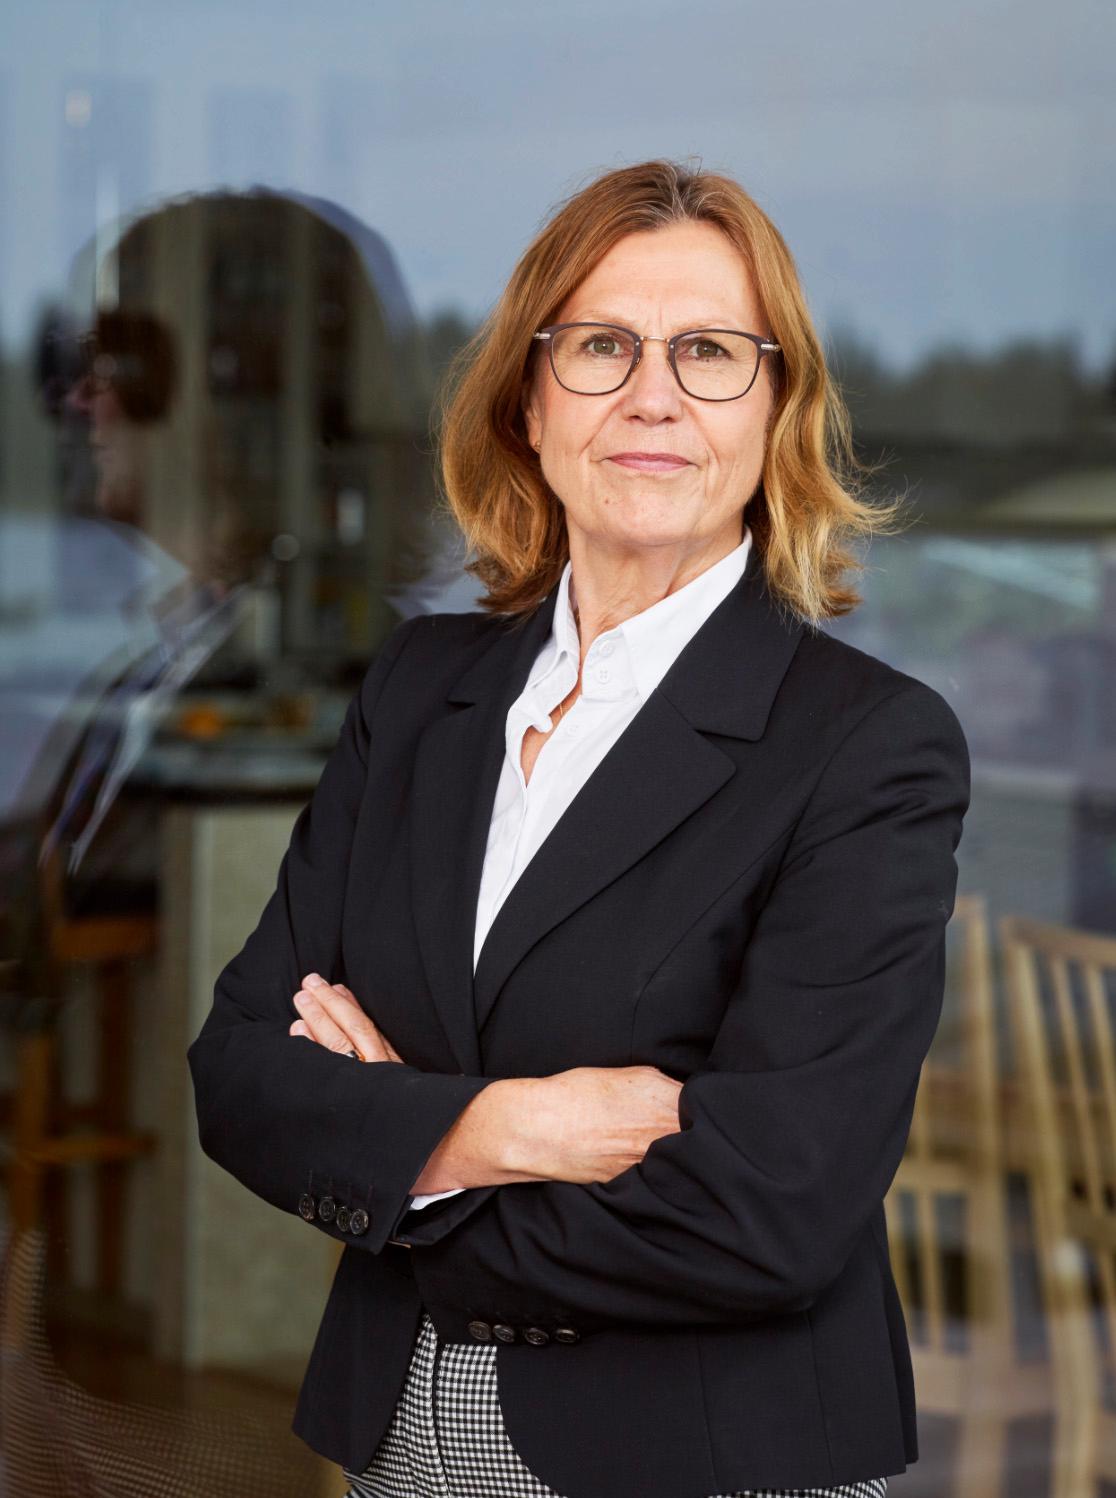  Anna-Stina Nordmark Nilsson, regiondirektör i Norrbotten. 